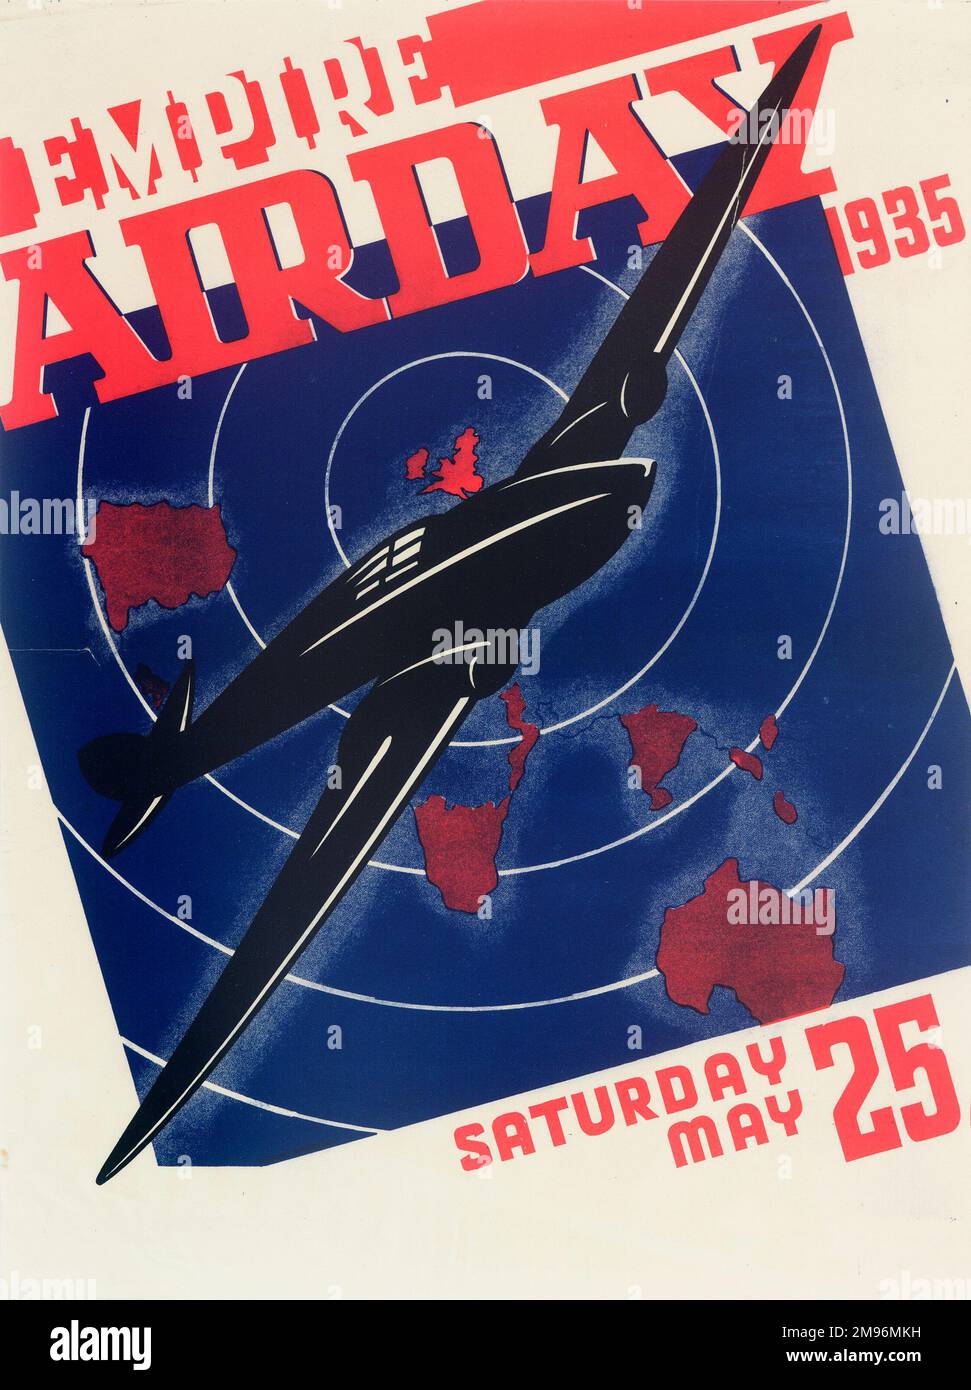 Affiche, Empire Air Day 1935, montrant un avion volant au-dessus d'une carte simplifiée de l'Empire britannique. Banque D'Images